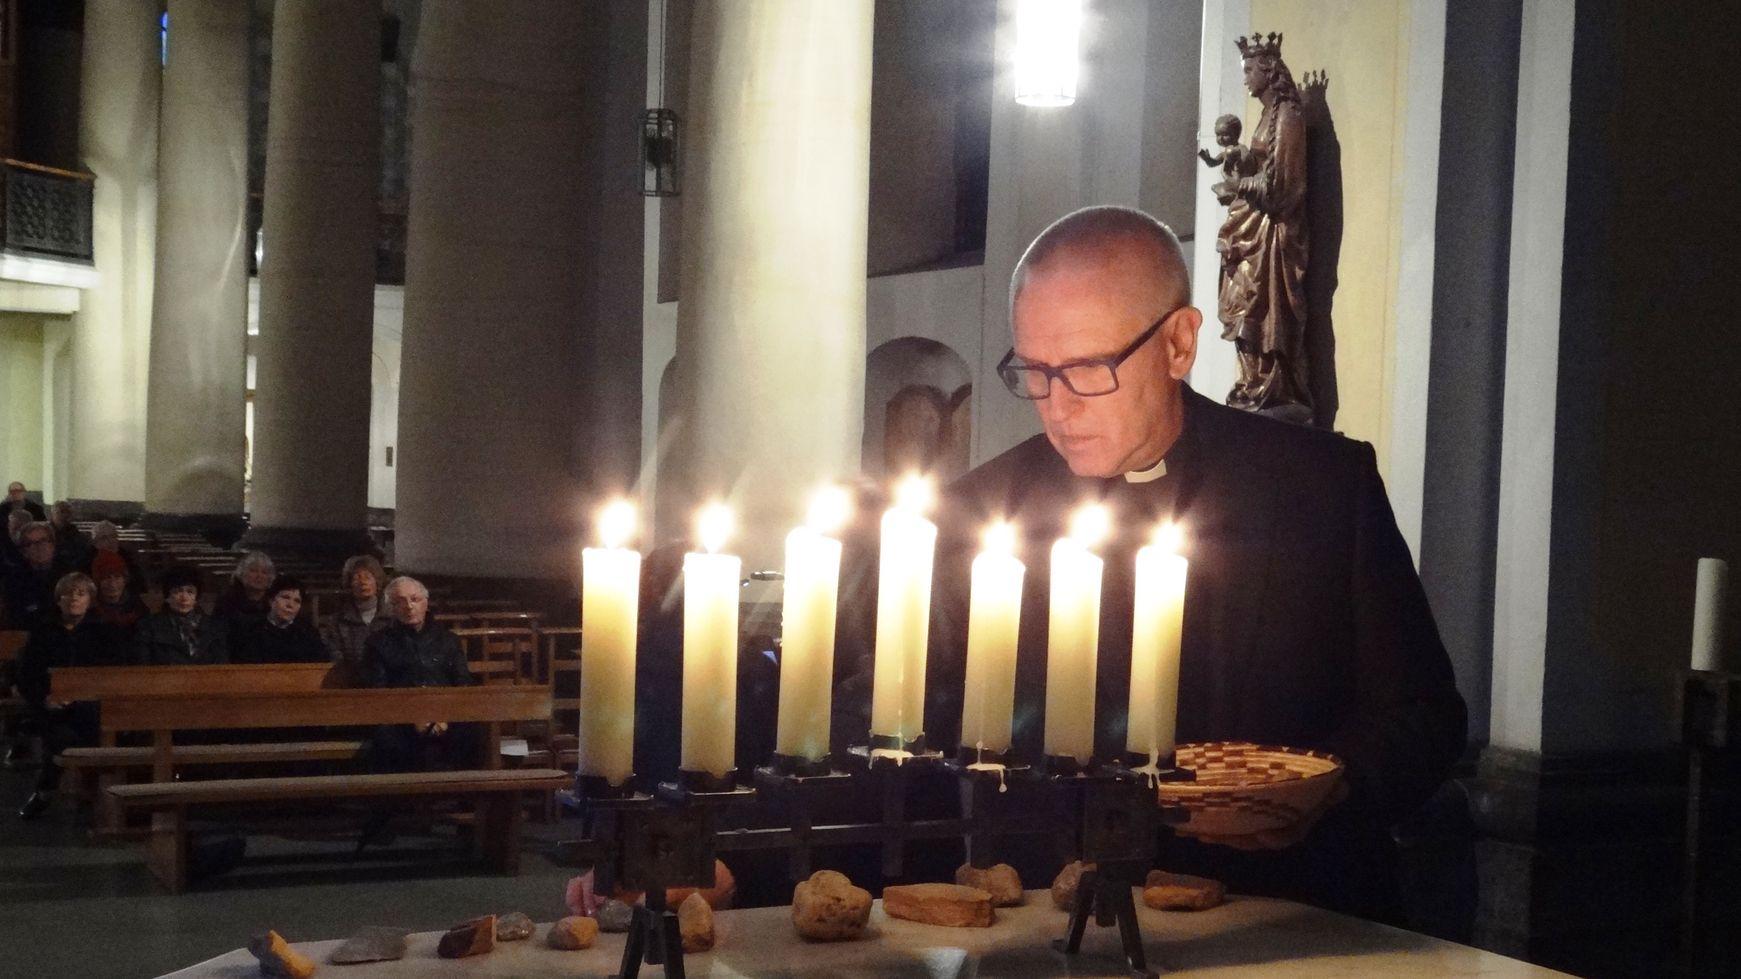 Pfarrer Rainer Gattys legt in Erinnerung an die Würselener Juden Steine auf den Altar.